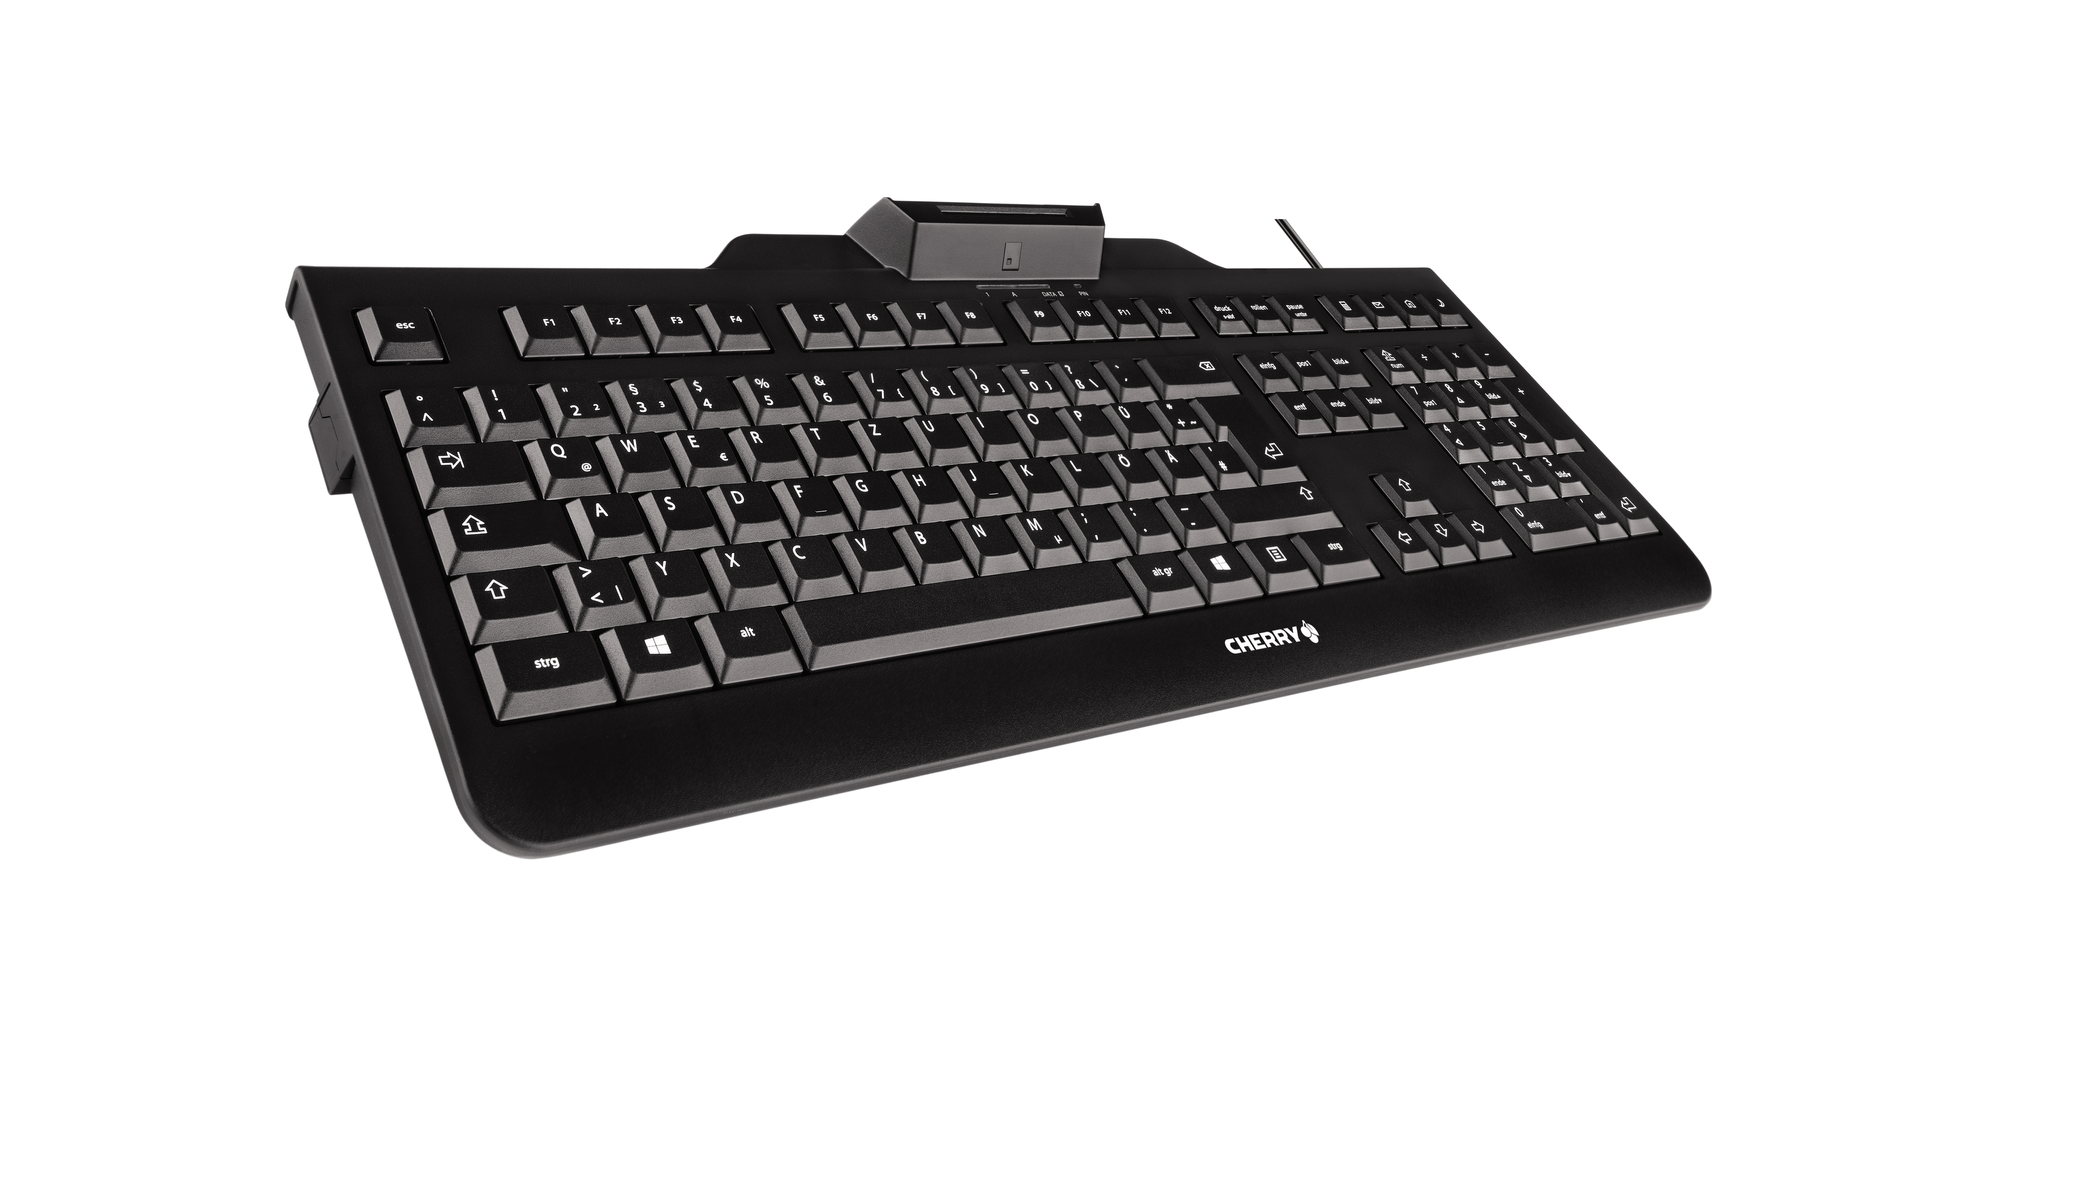 JK-A0100DE-2, CHERRY Tastatur